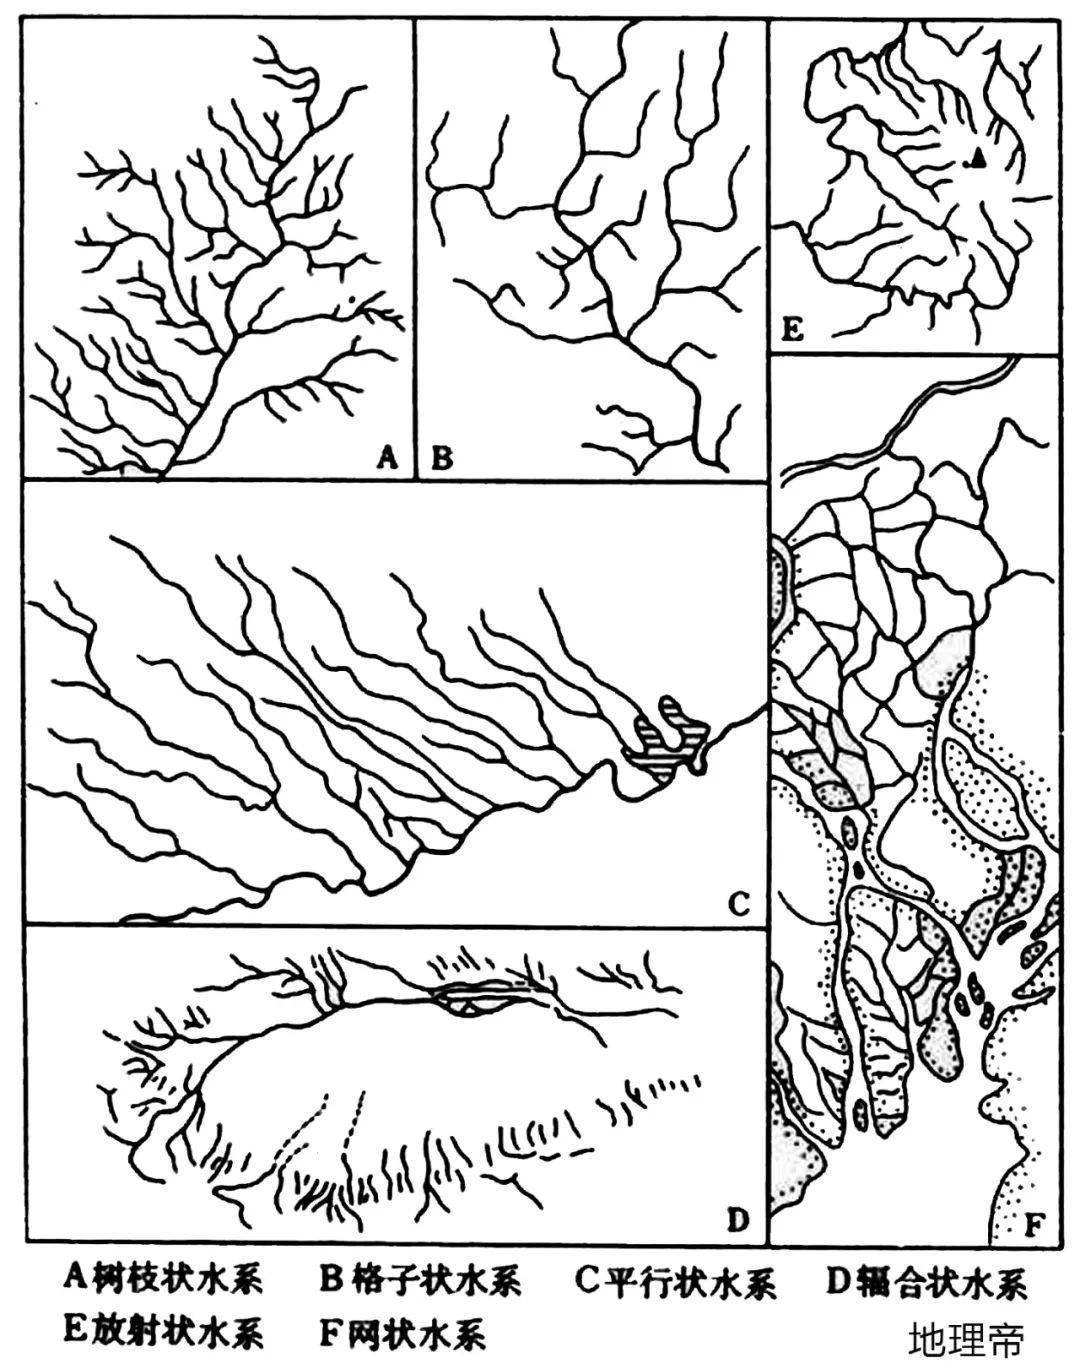 树枝状水系与扇形水系图片